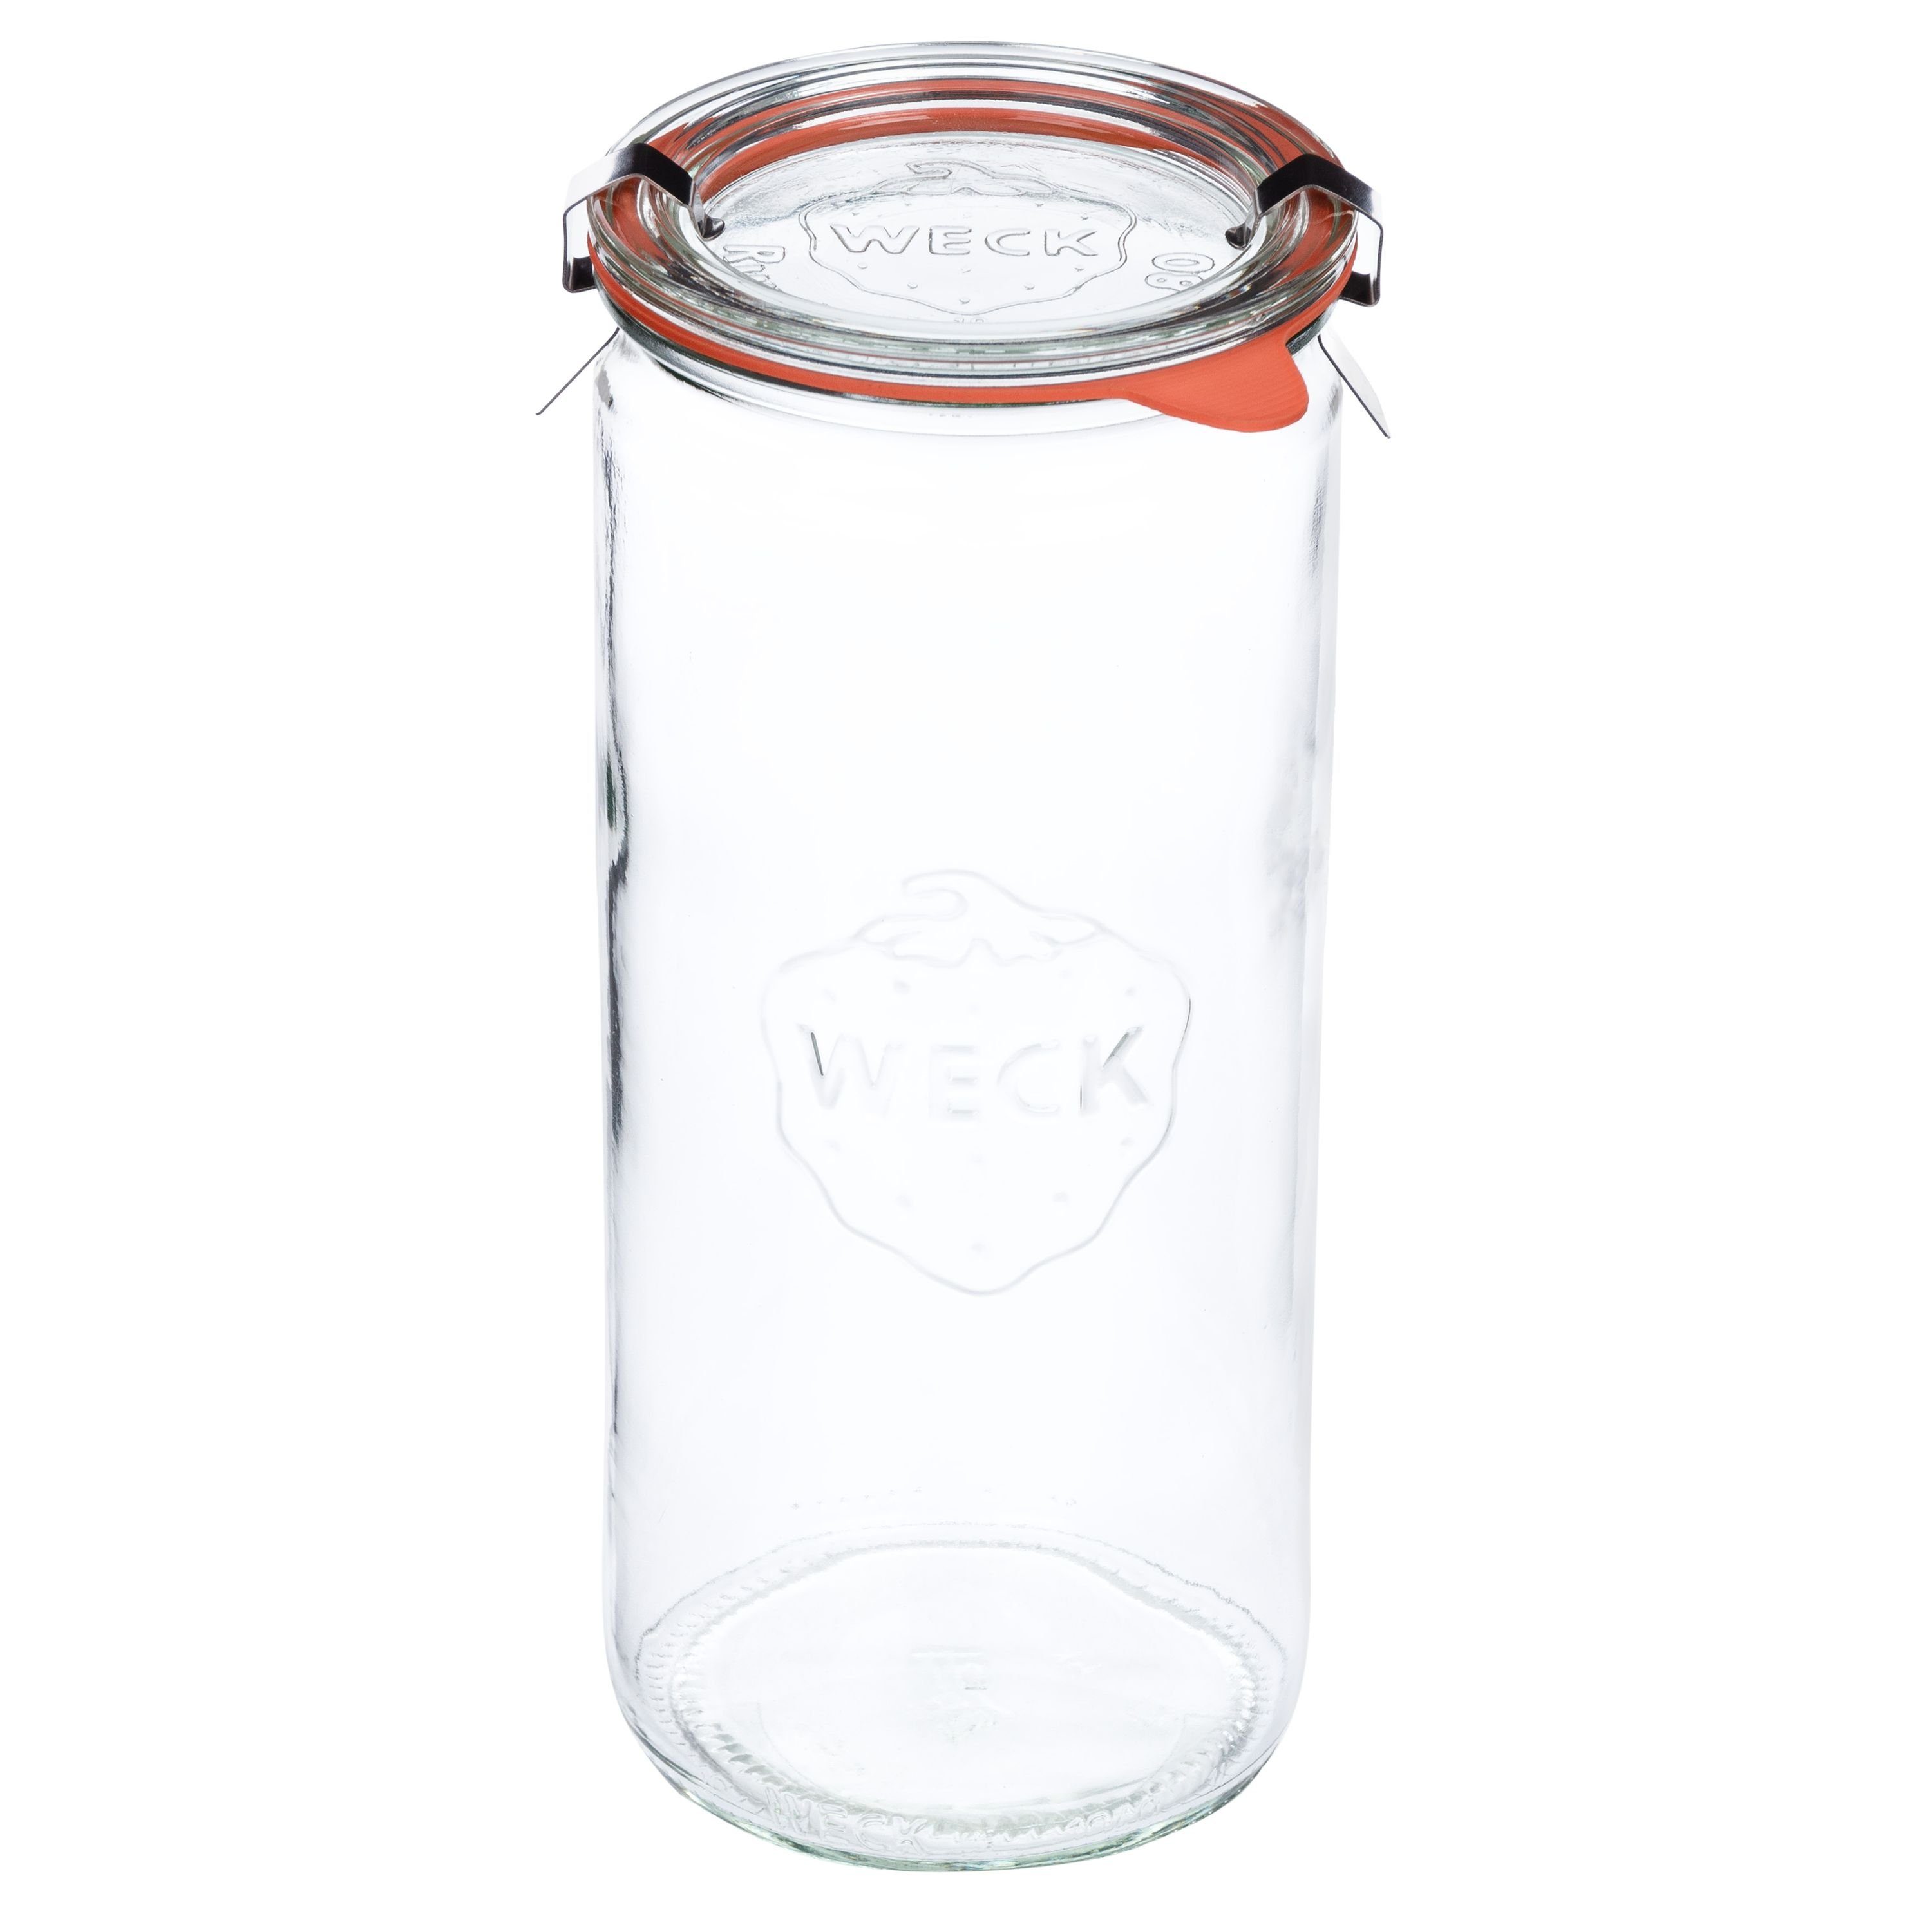 Glas MamboCat 1040ml + Weck Einmachglas Einkochringe Deckel Set Gläser Zylinderglas 8er Klammer,